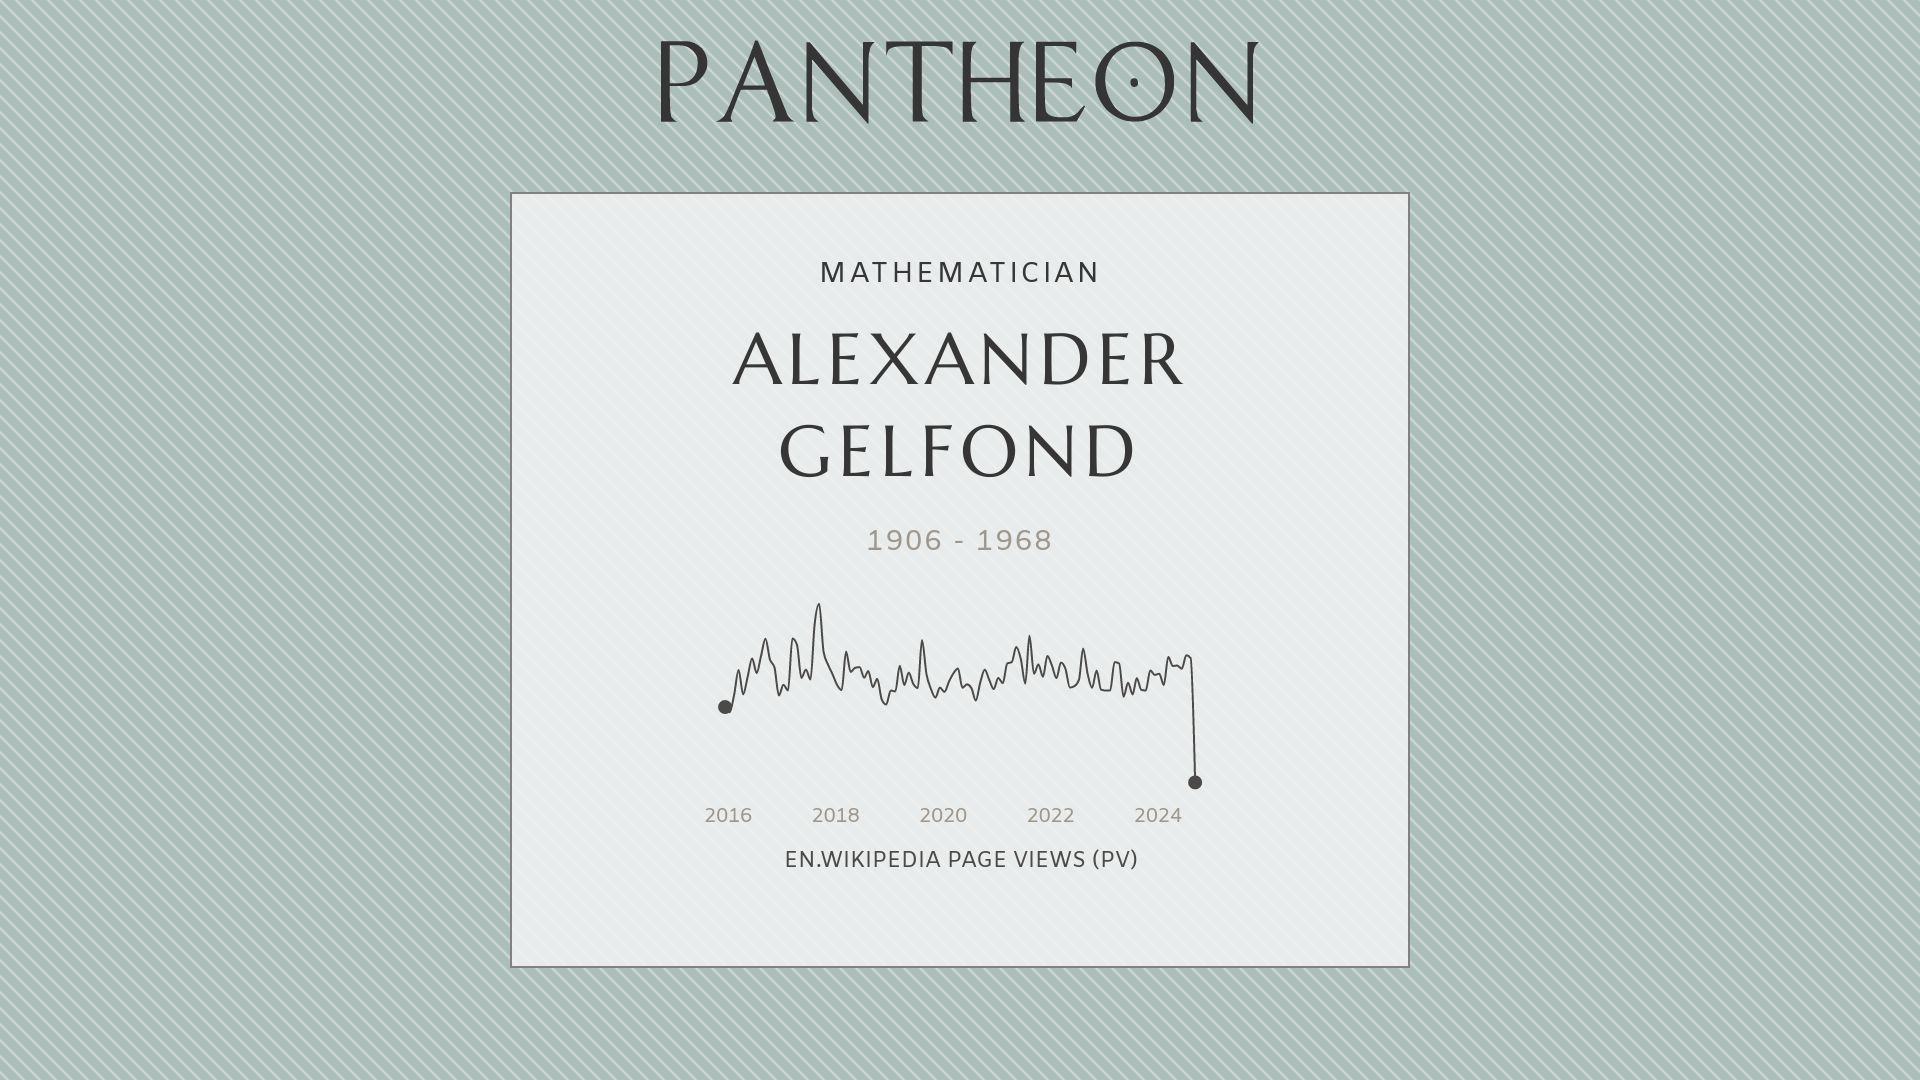 Alexander Gelfond Biography - Soviet mathematician | Pantheon